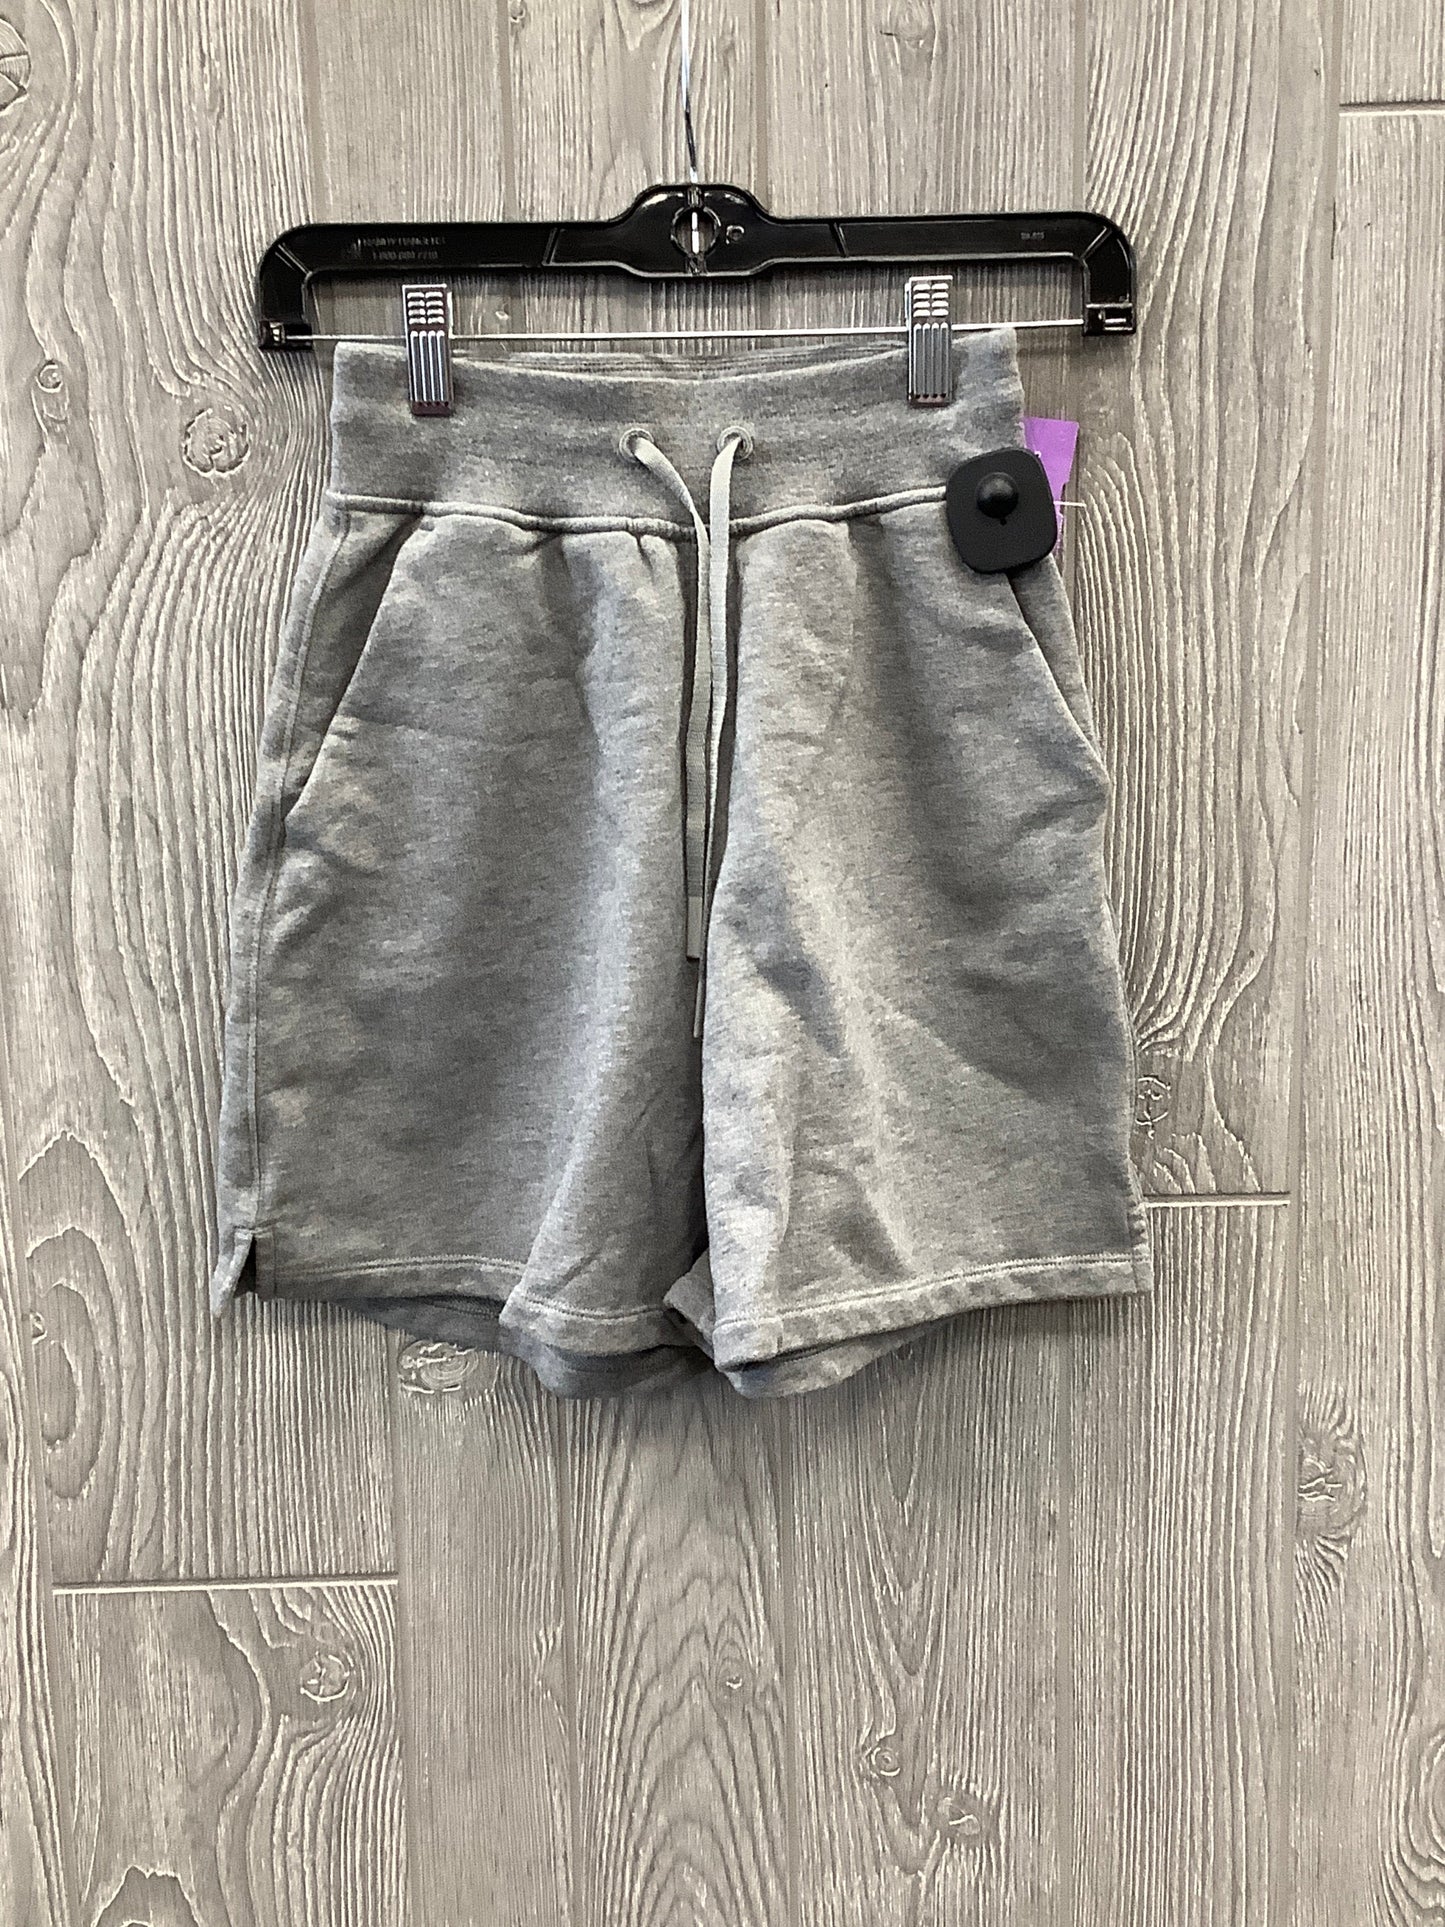 Grey Athletic Shorts Lululemon, Size 0